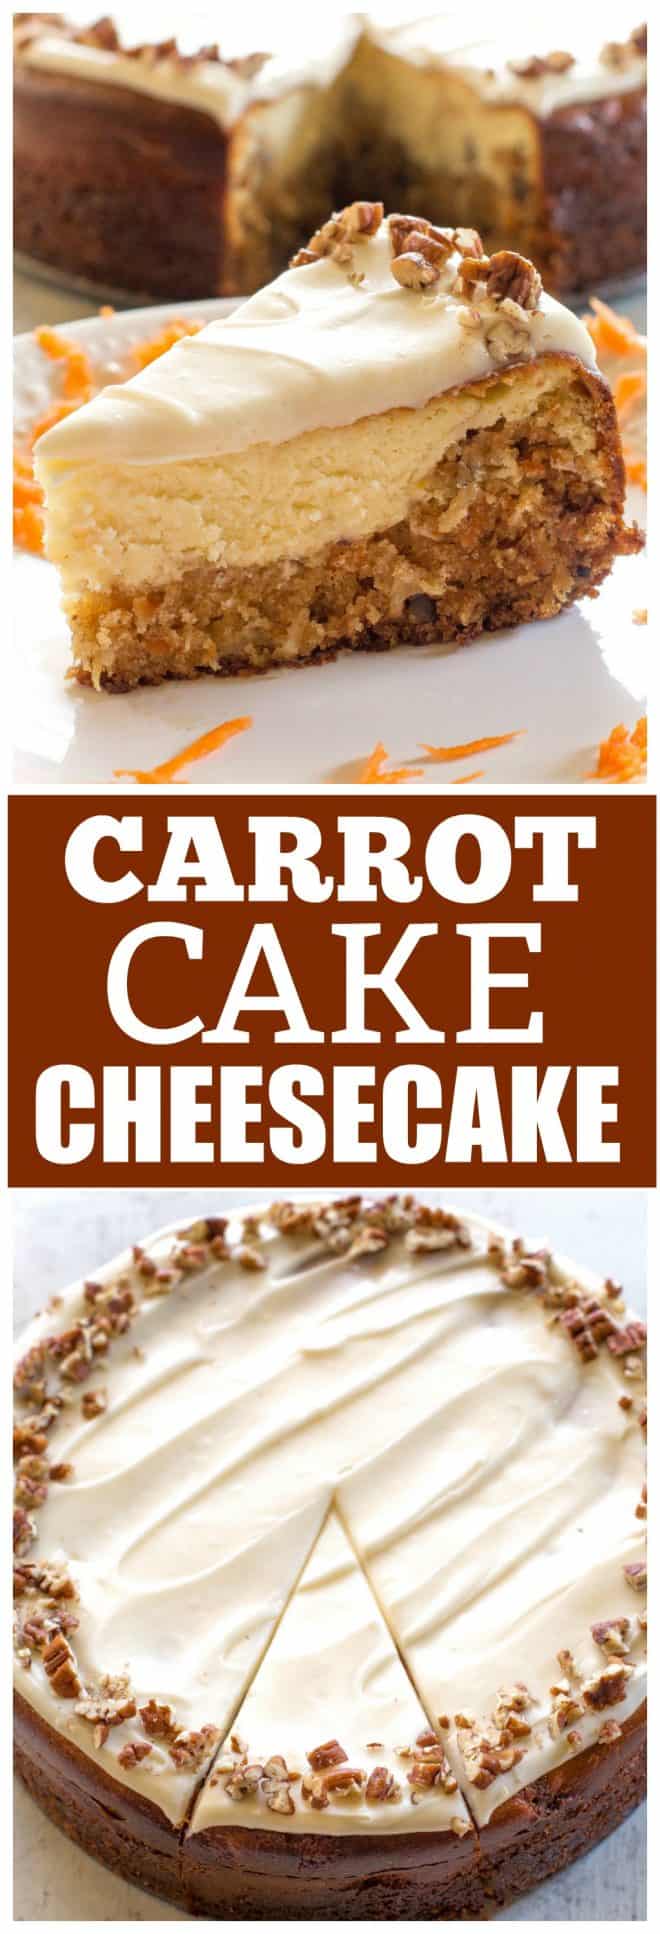 carrot cake cheesecake